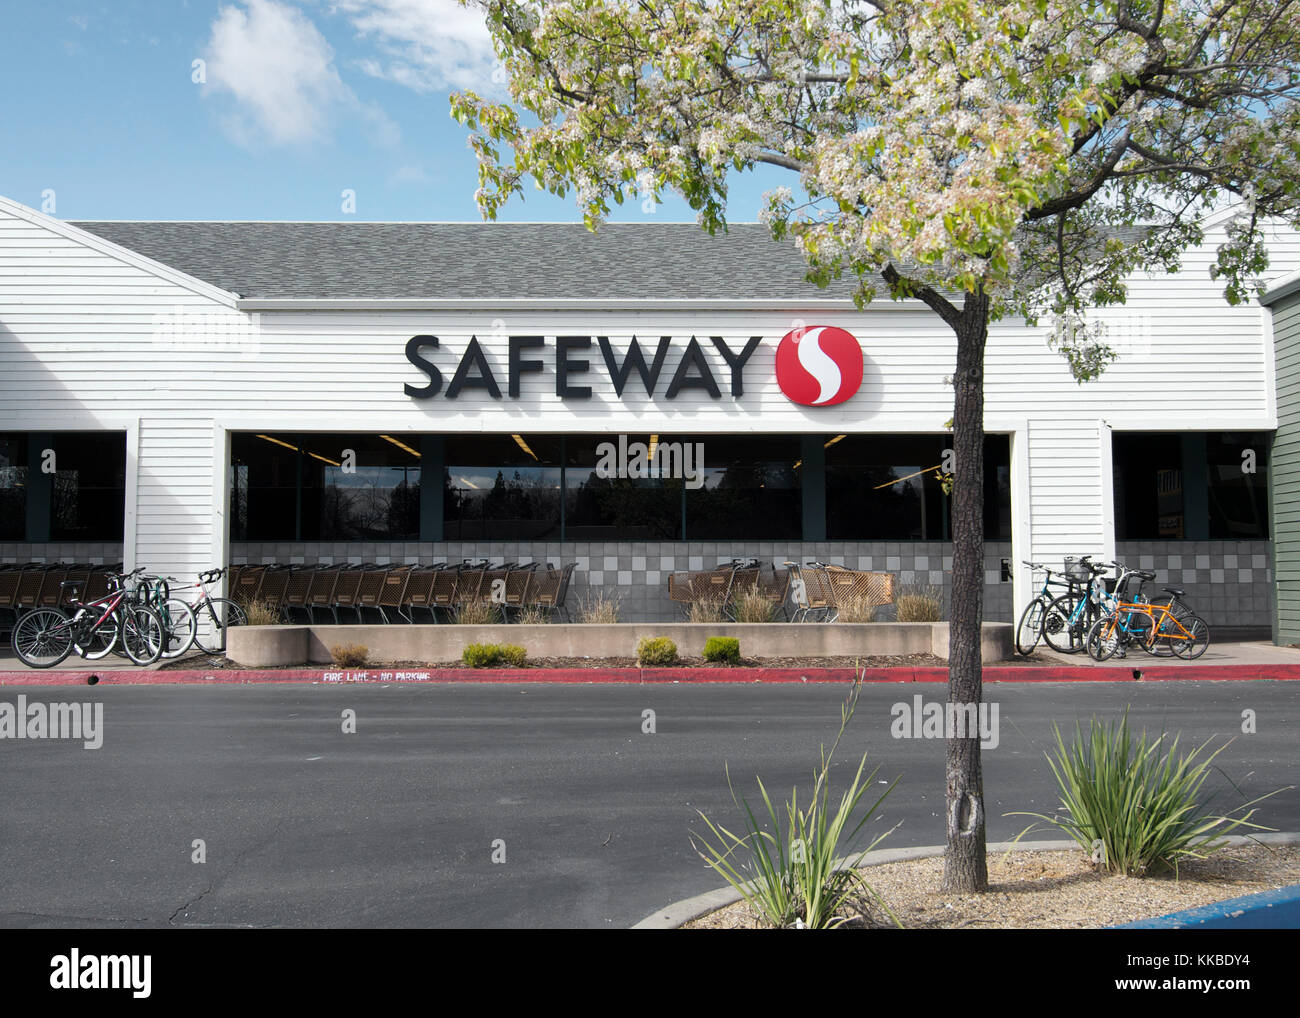 Safeway am Marktplatz, Davis, Kalifornien, USA, am Ende des Winters von 2017, mit Fahrrädern in Fahrradständer abgestellt Stockfoto